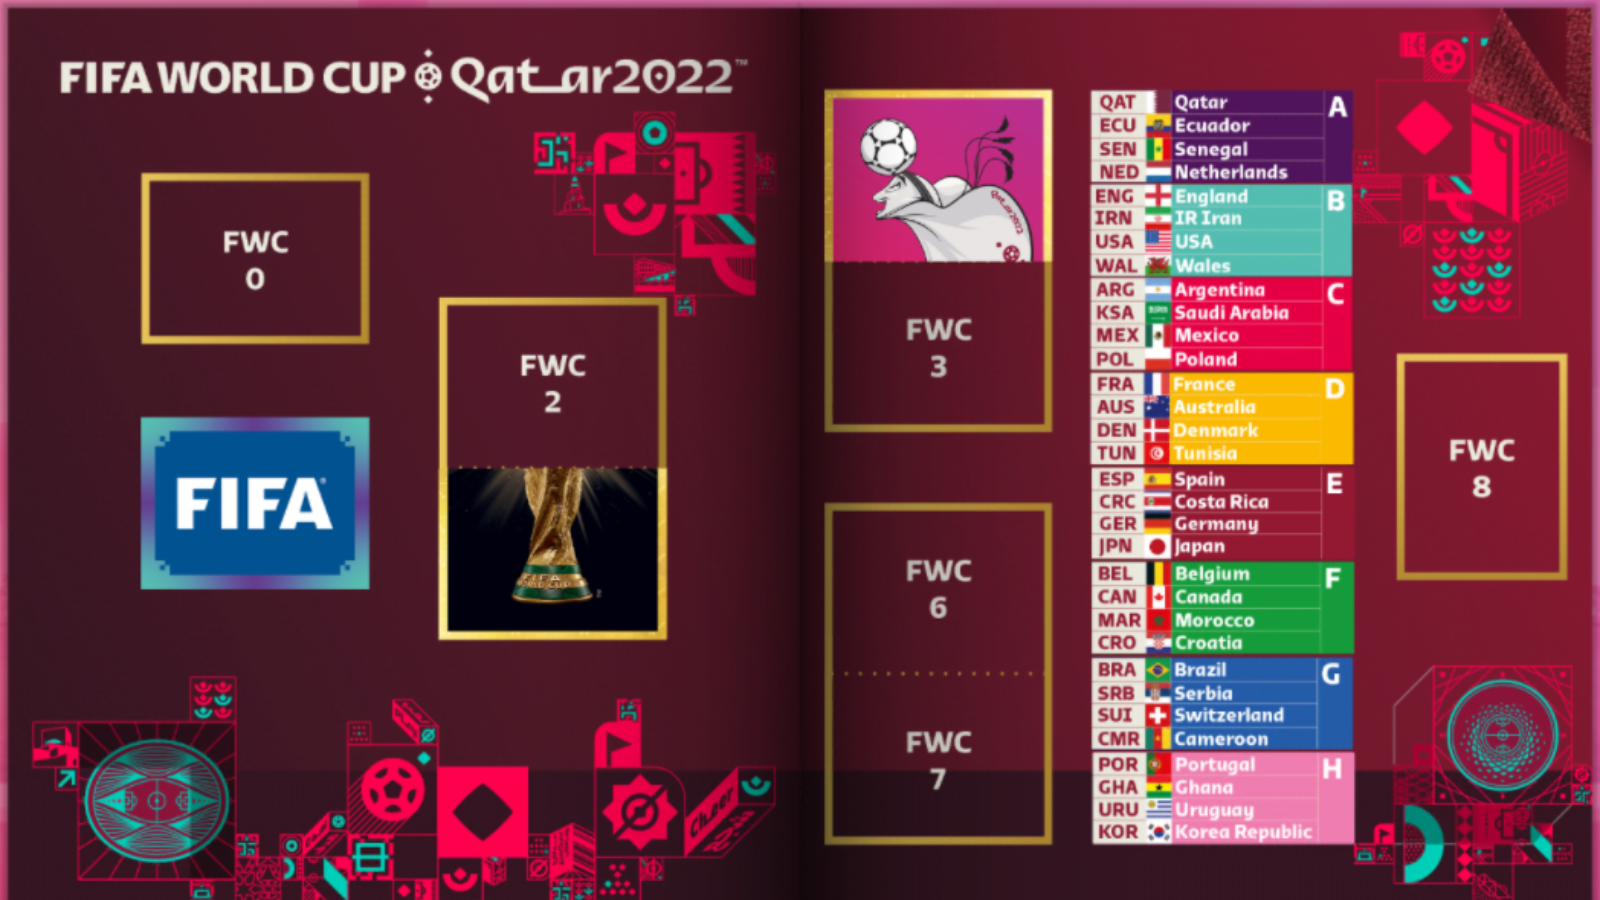 Álbum da copa do mundo de 2022 está disponível em versão digital